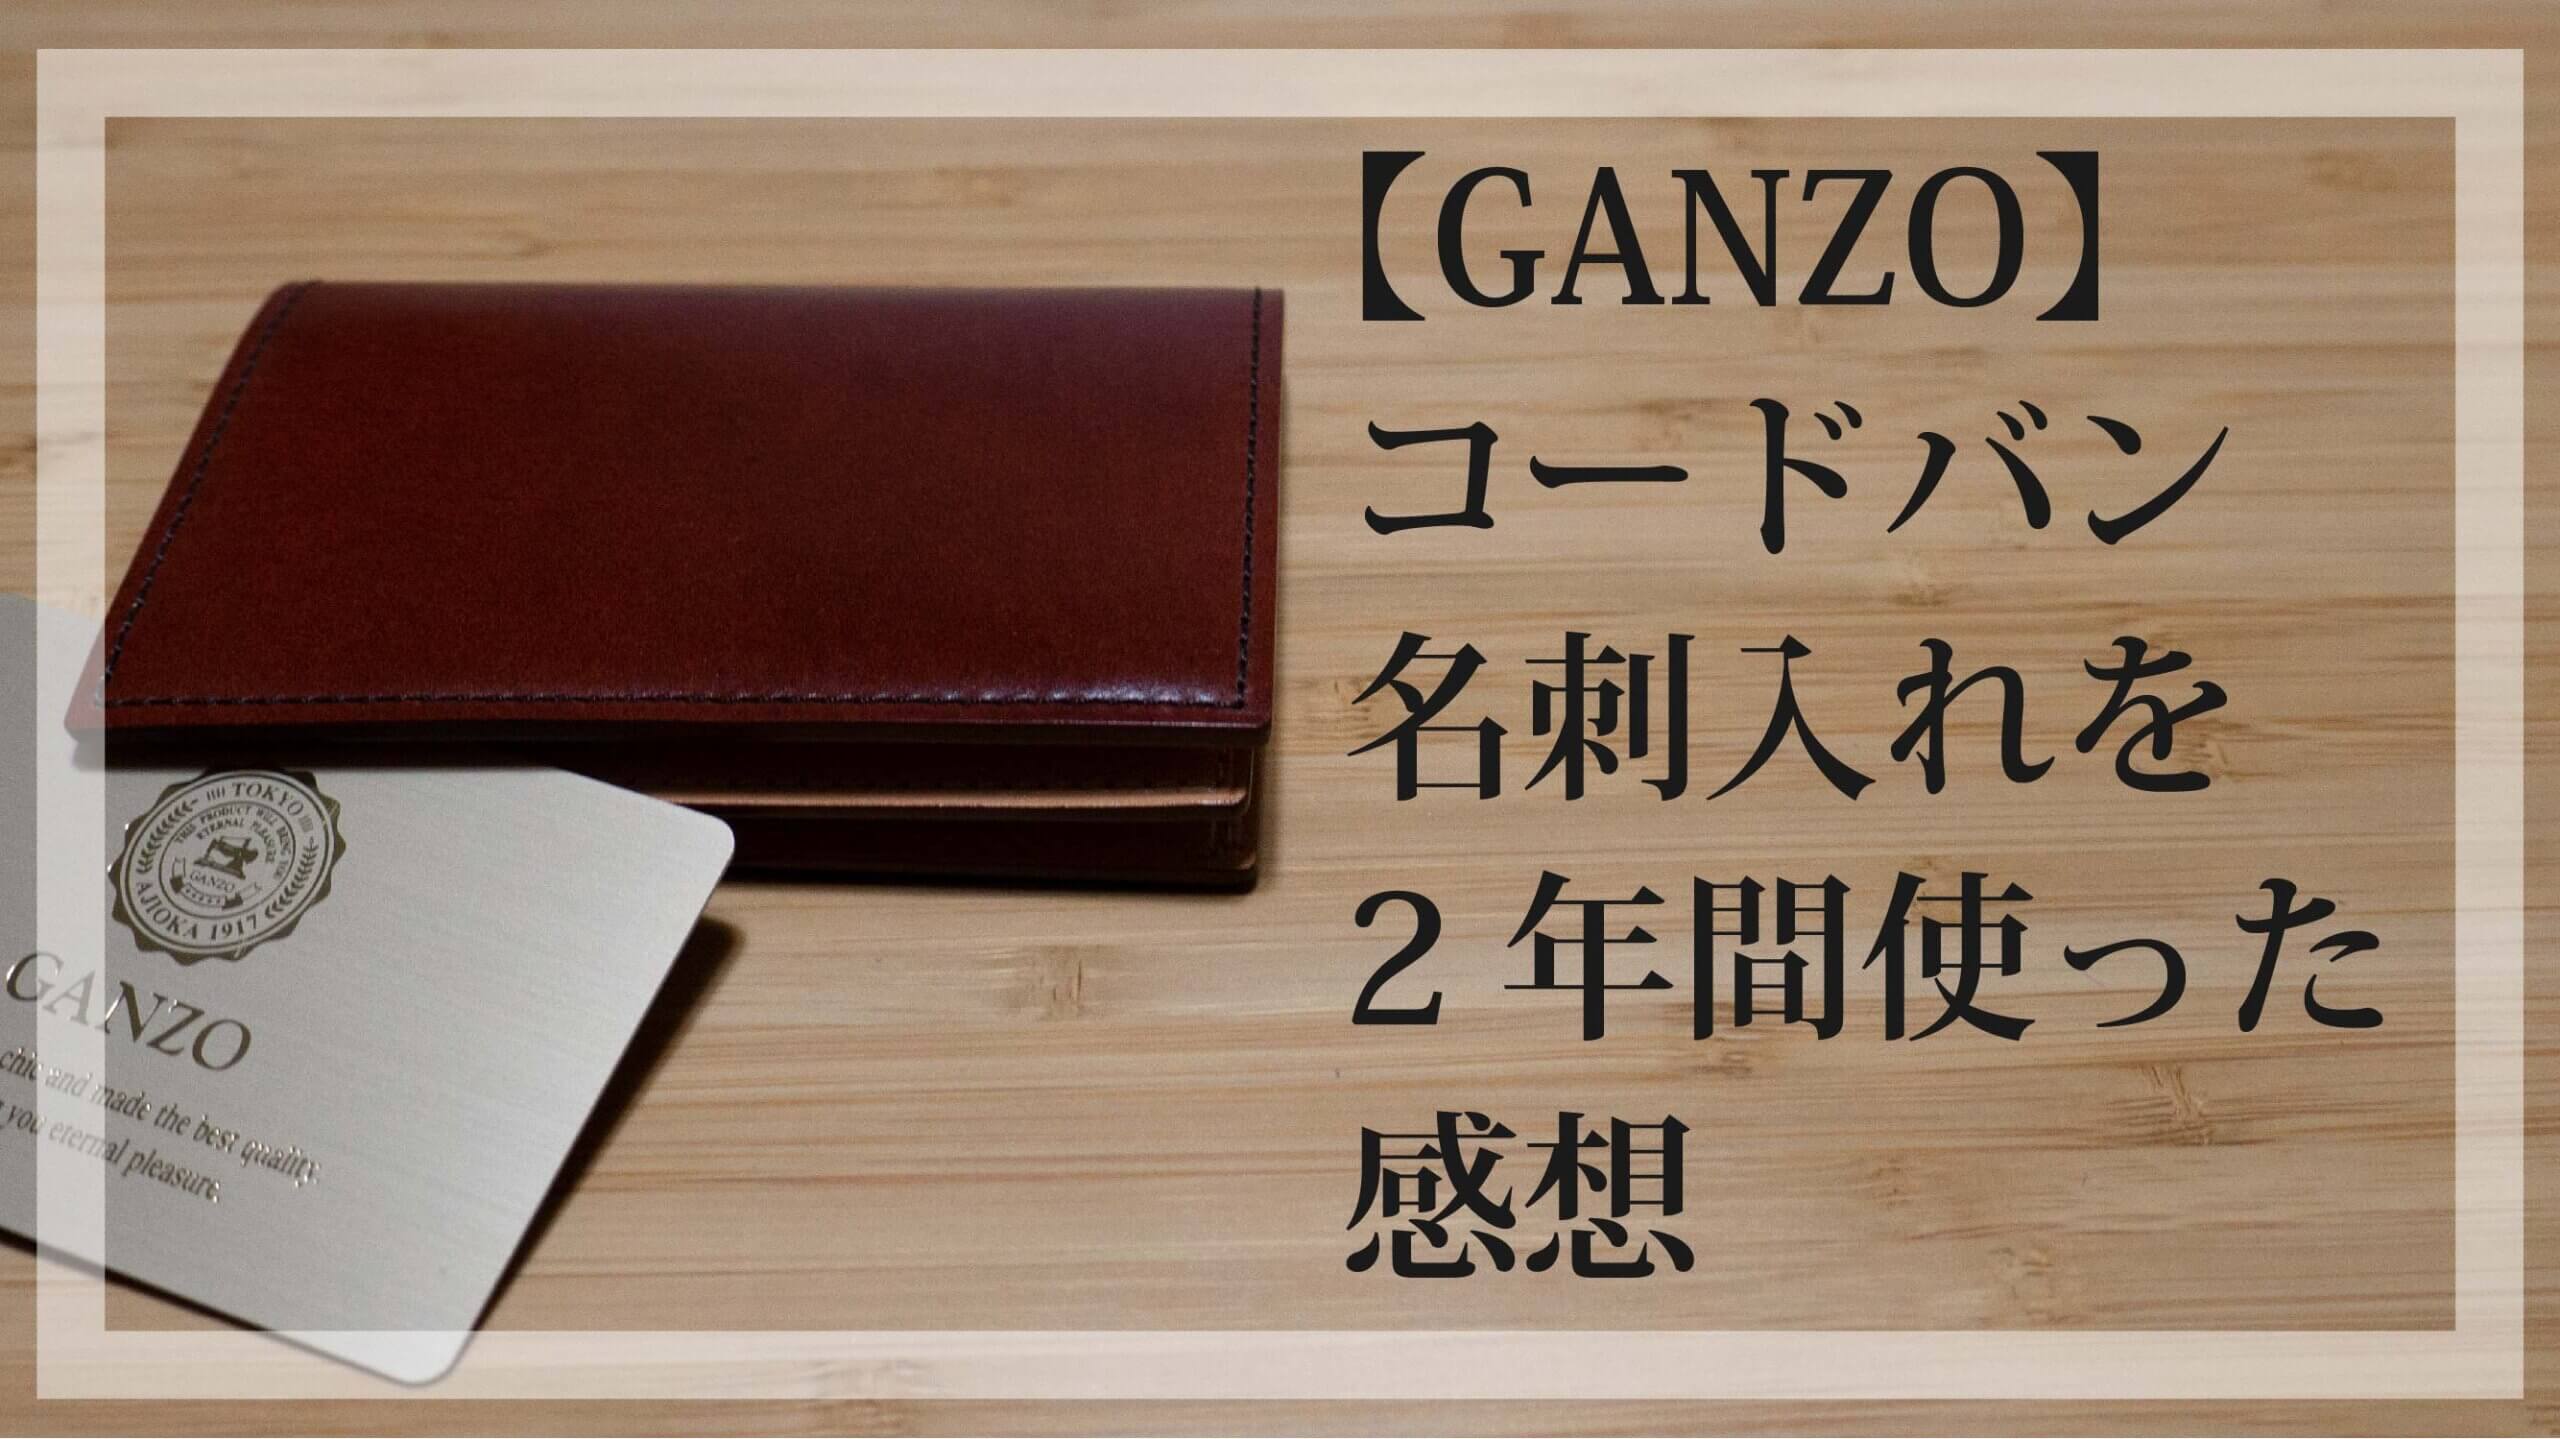 新品 GANZO(ガンゾ)シェルコードバン2 名刺入れ ナチュラル-